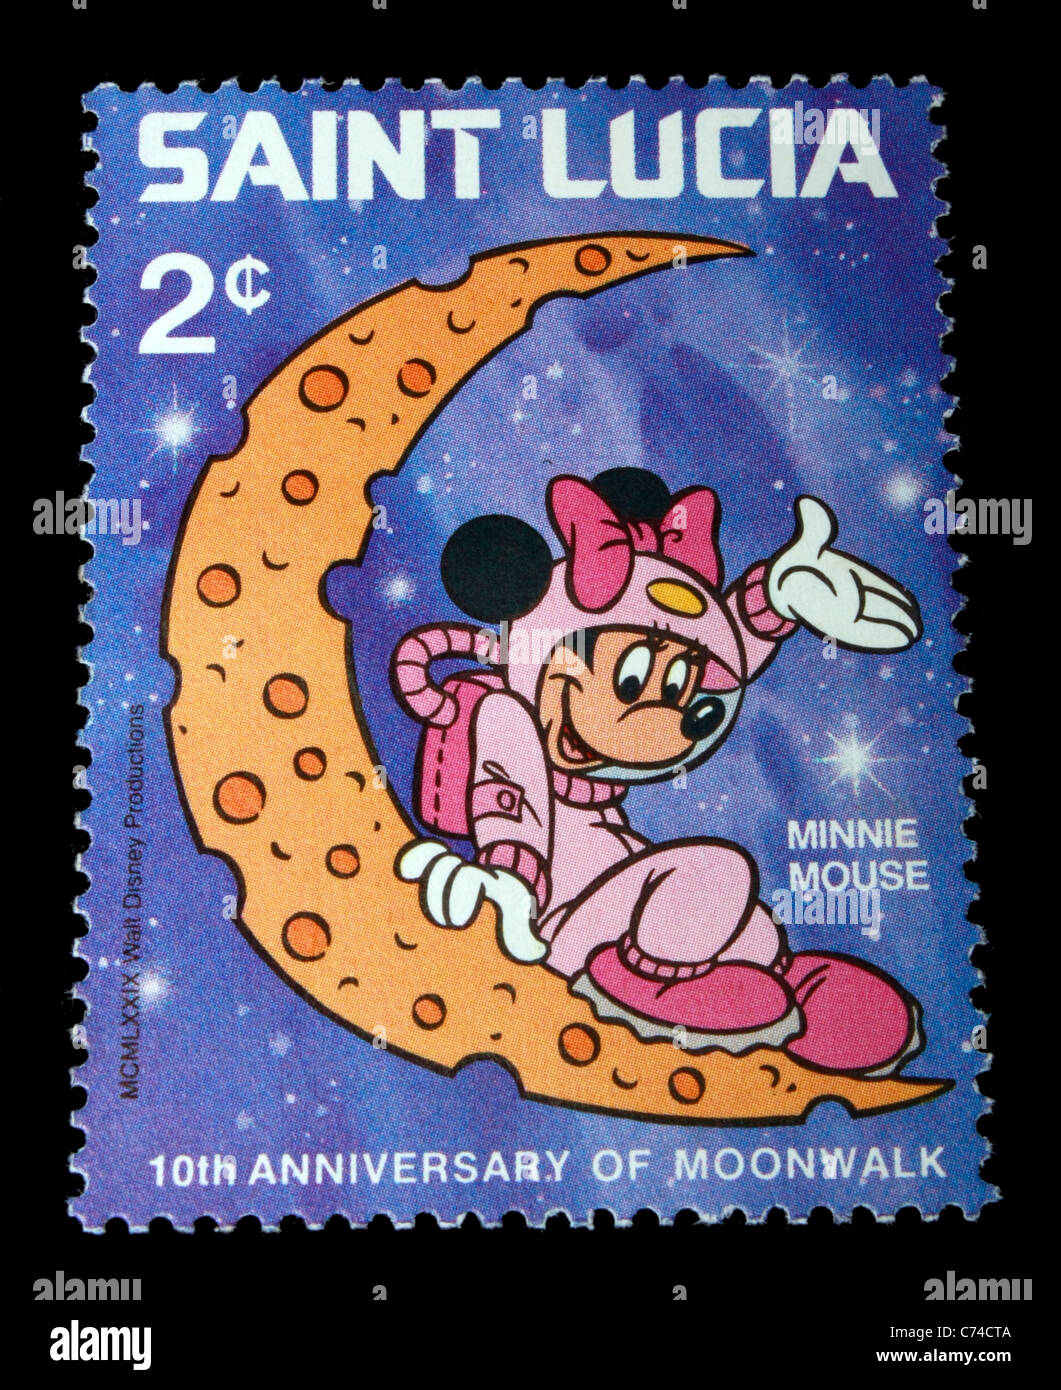 Saint Lucia montrant des timbres du personnage de Walt Disney Minnie Mouse Banque D'Images